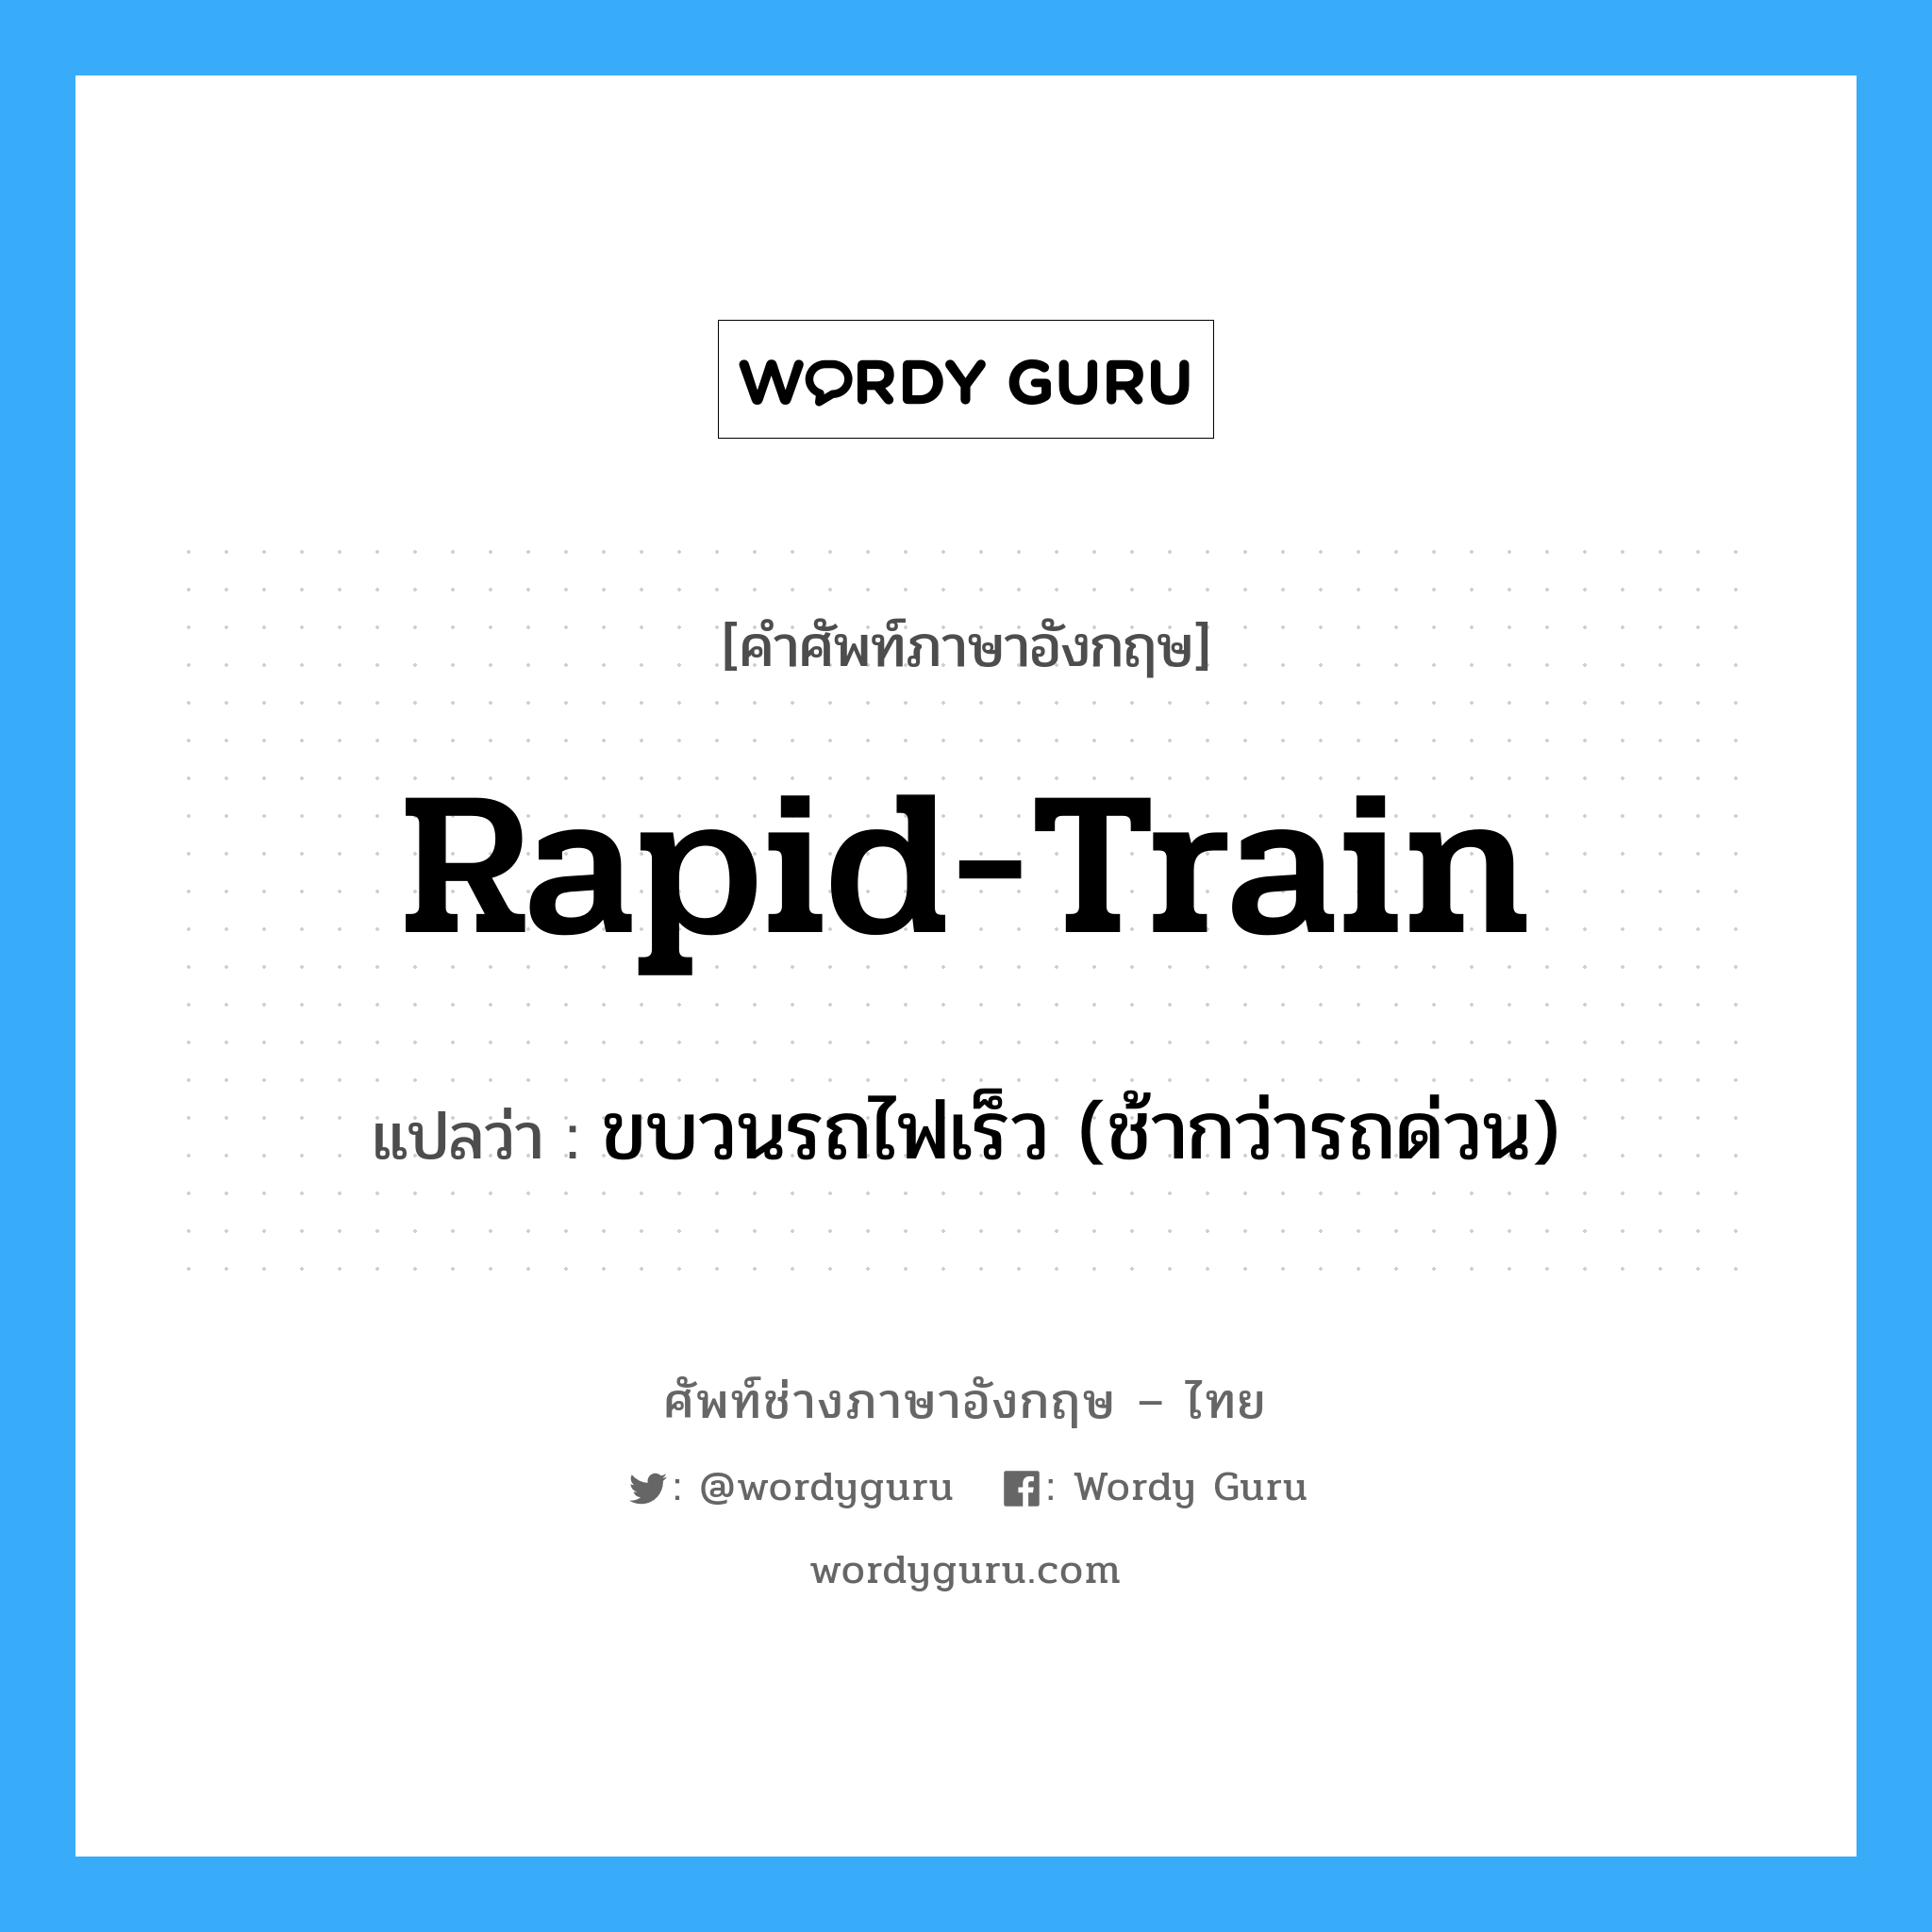 ขบวนรถไฟเร็ว (ช้ากว่ารถด่วน) ภาษาอังกฤษ?, คำศัพท์ช่างภาษาอังกฤษ - ไทย ขบวนรถไฟเร็ว (ช้ากว่ารถด่วน) คำศัพท์ภาษาอังกฤษ ขบวนรถไฟเร็ว (ช้ากว่ารถด่วน) แปลว่า rapid-train